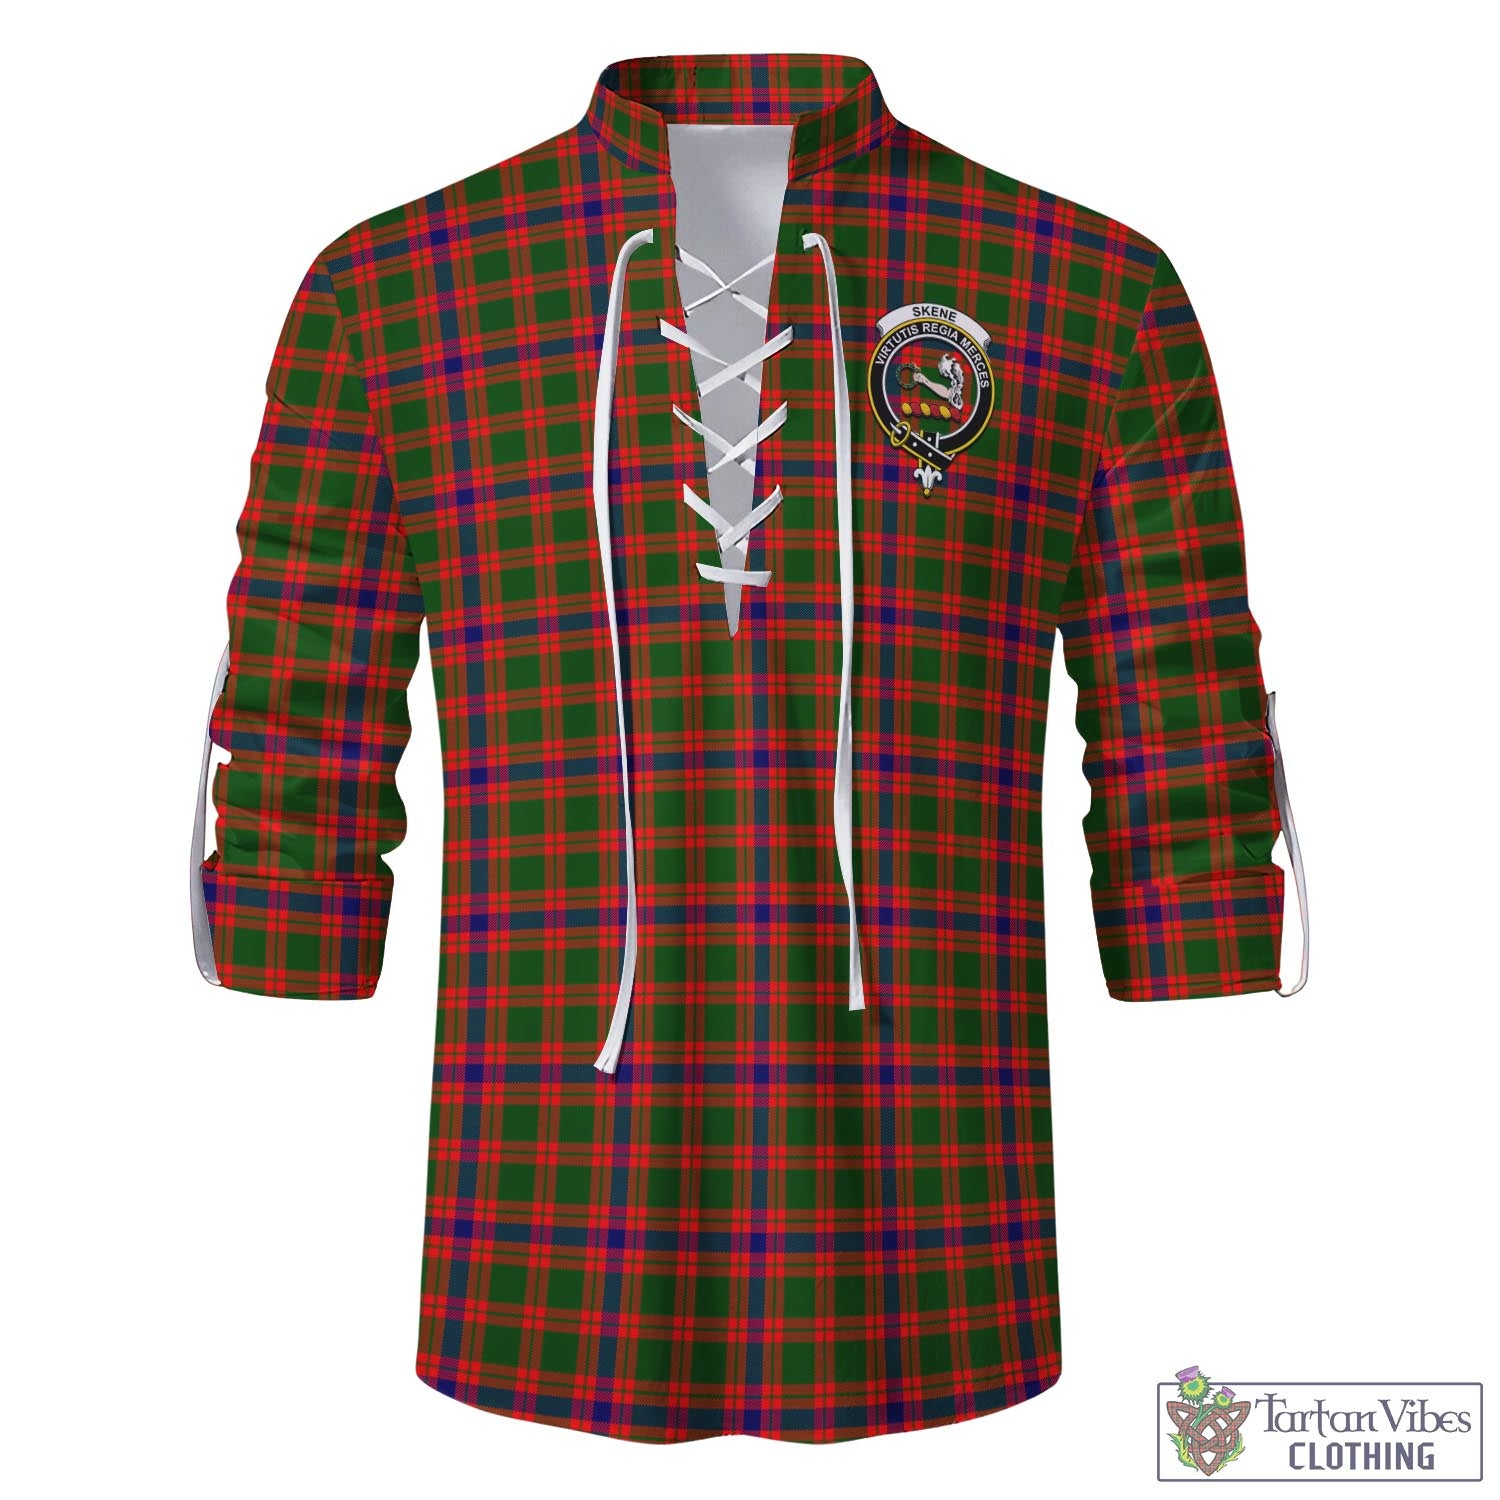 Tartan Vibes Clothing Skene Modern Tartan Men's Scottish Traditional Jacobite Ghillie Kilt Shirt with Family Crest